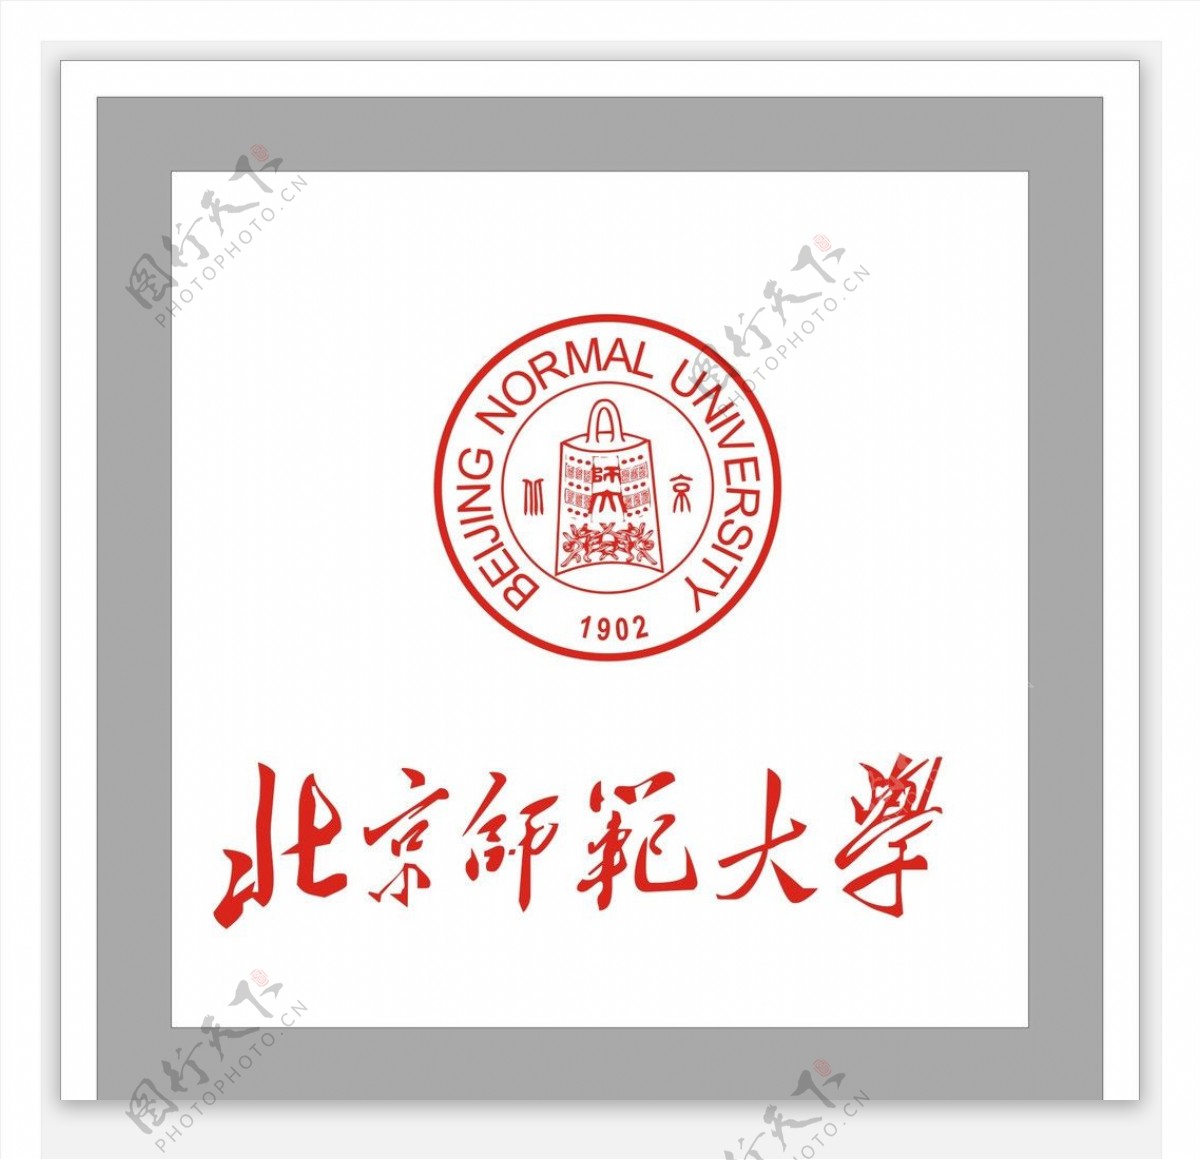 北京师范大学图片